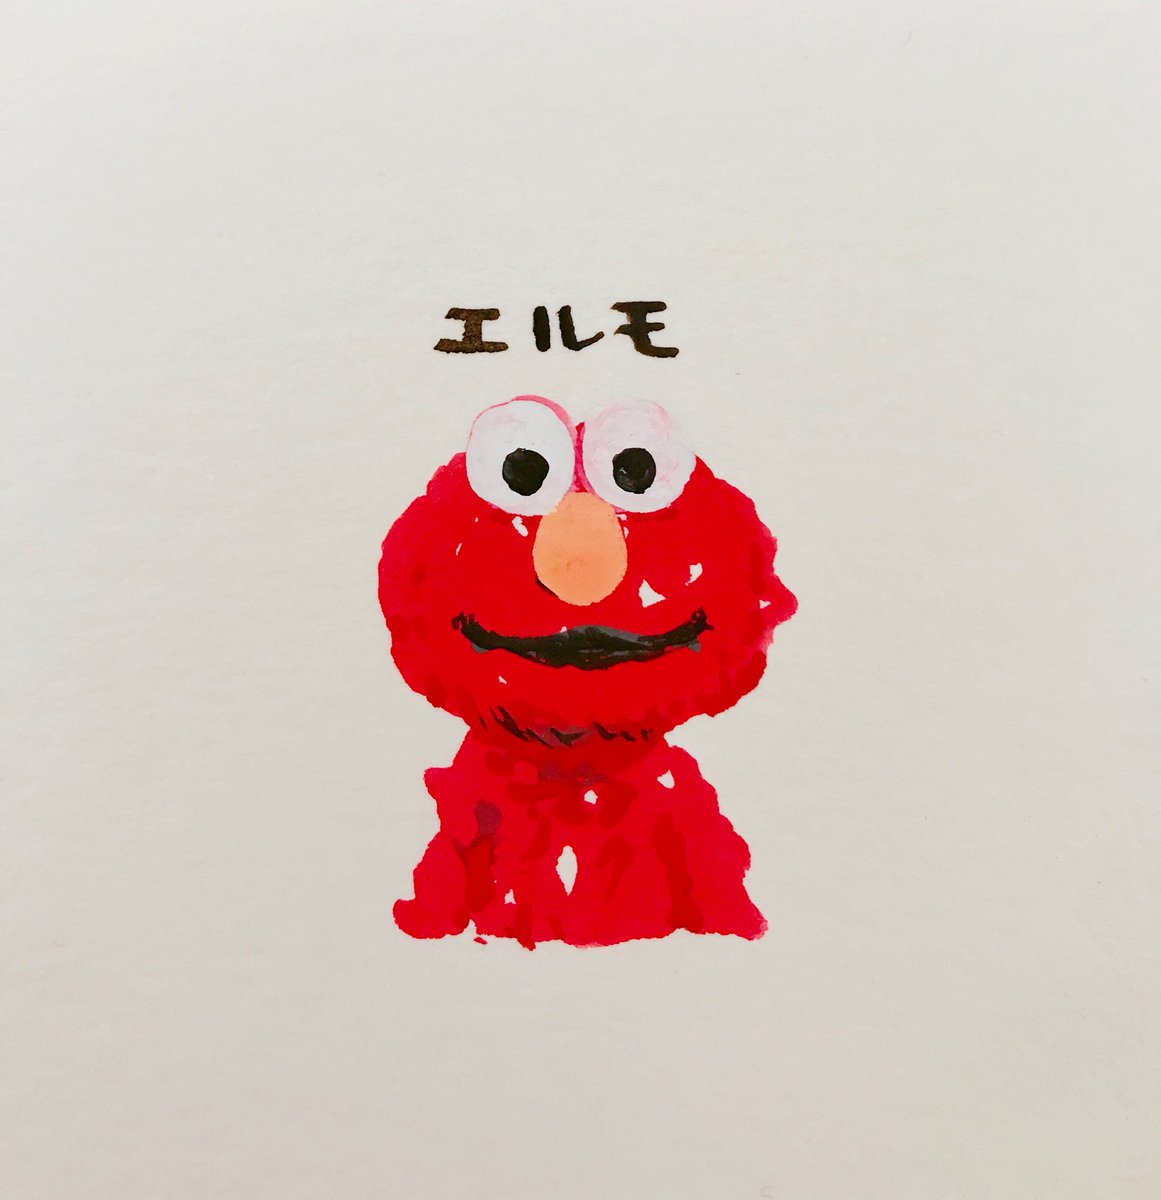 「赤い絵の具を出したので紙の端っこに赤くて可愛い子を描いてみた

#ポスターカラー」|羽海野🌸根付鈴4/9迄受付中です🍓のイラスト